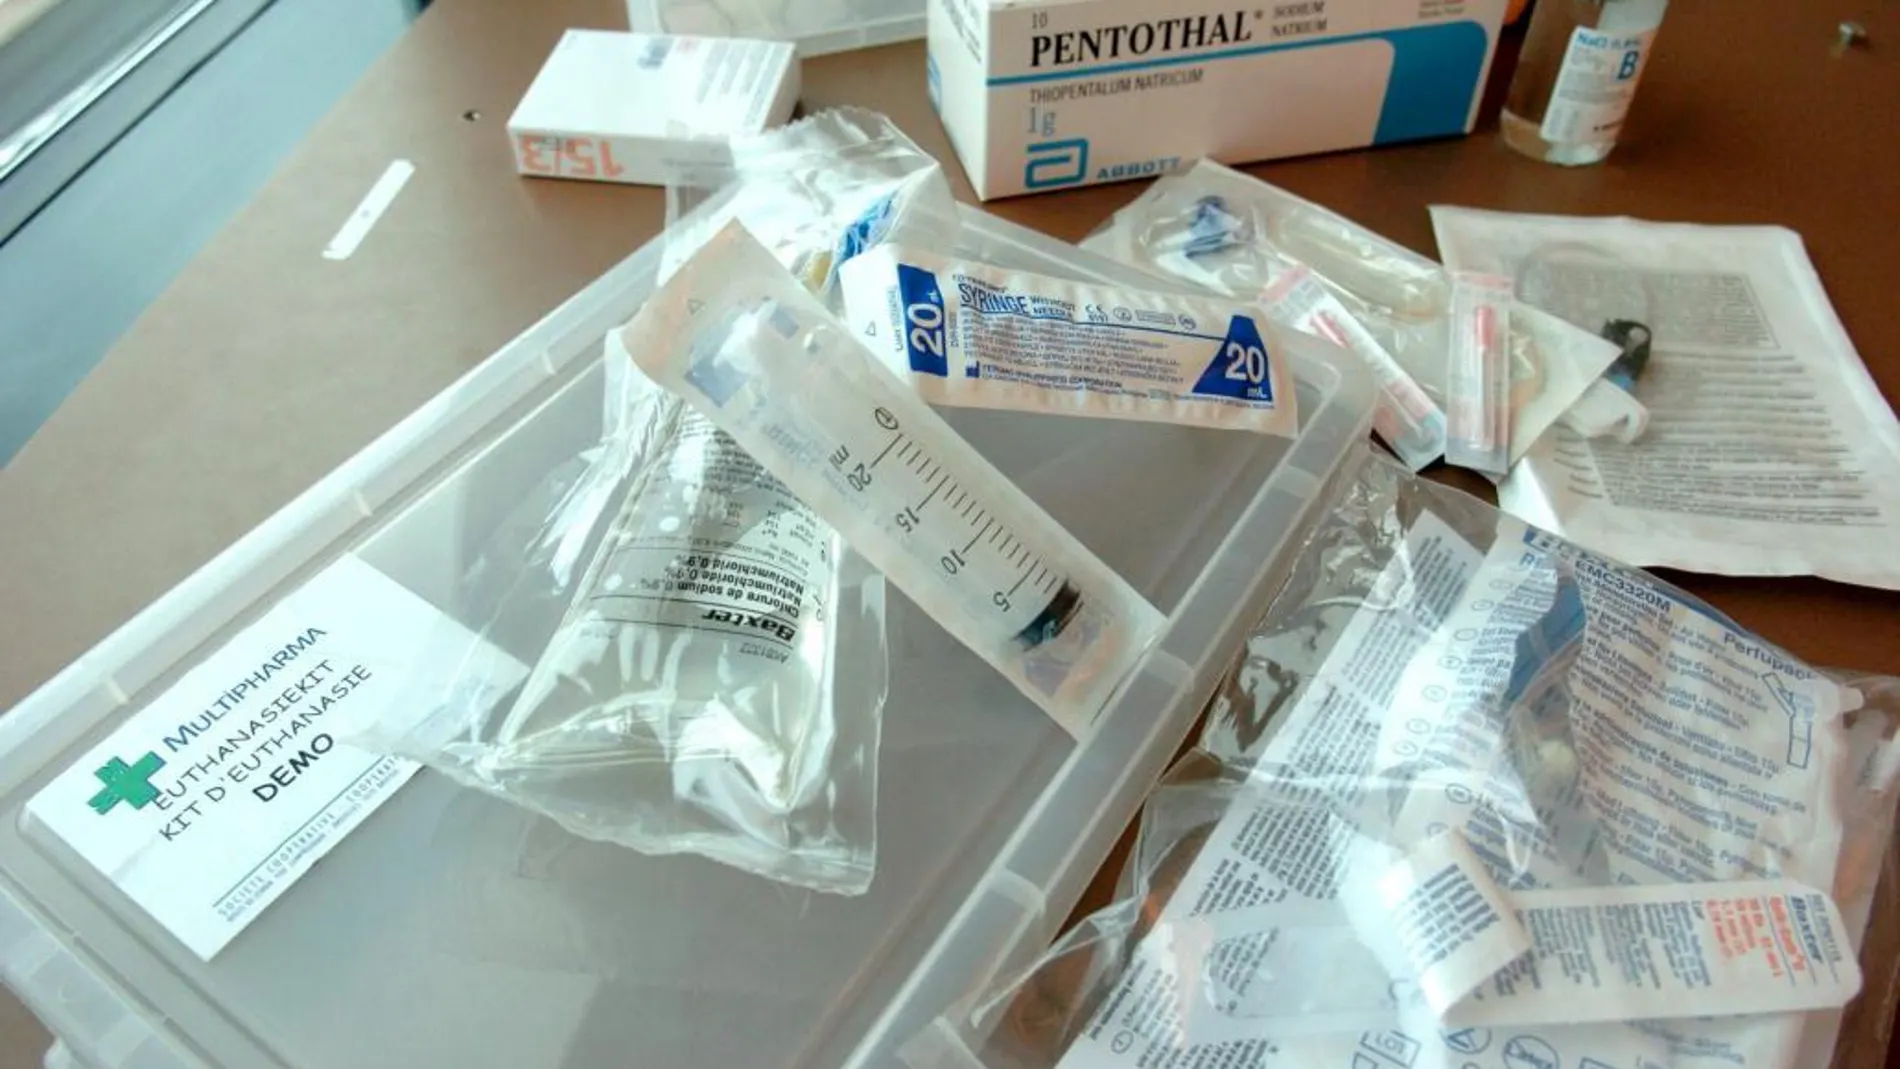 Vista del llamado "kit de eutanasia" que se vende en algunas farmacias de Bélgica